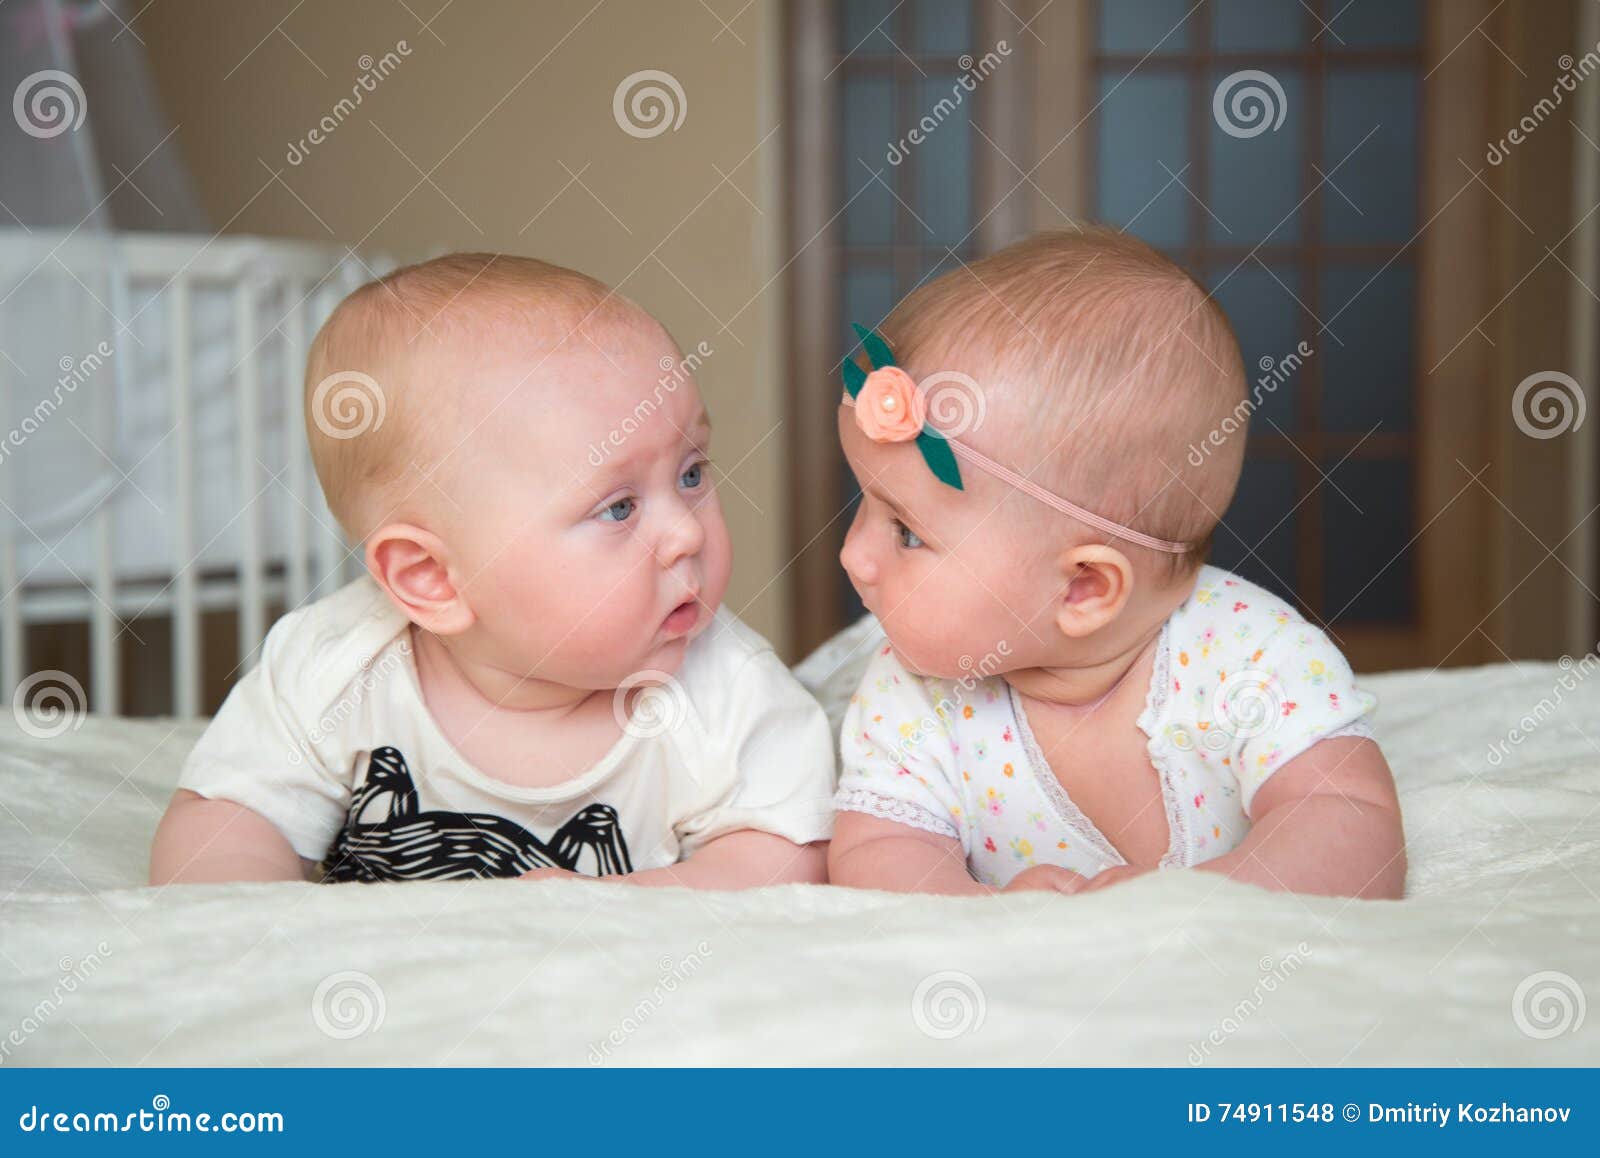 Le Bebe Garcon Et La Fille Jumeaux Se Trouvent Sur Le Lit Photo Stock Image Du Adorable Bonheur